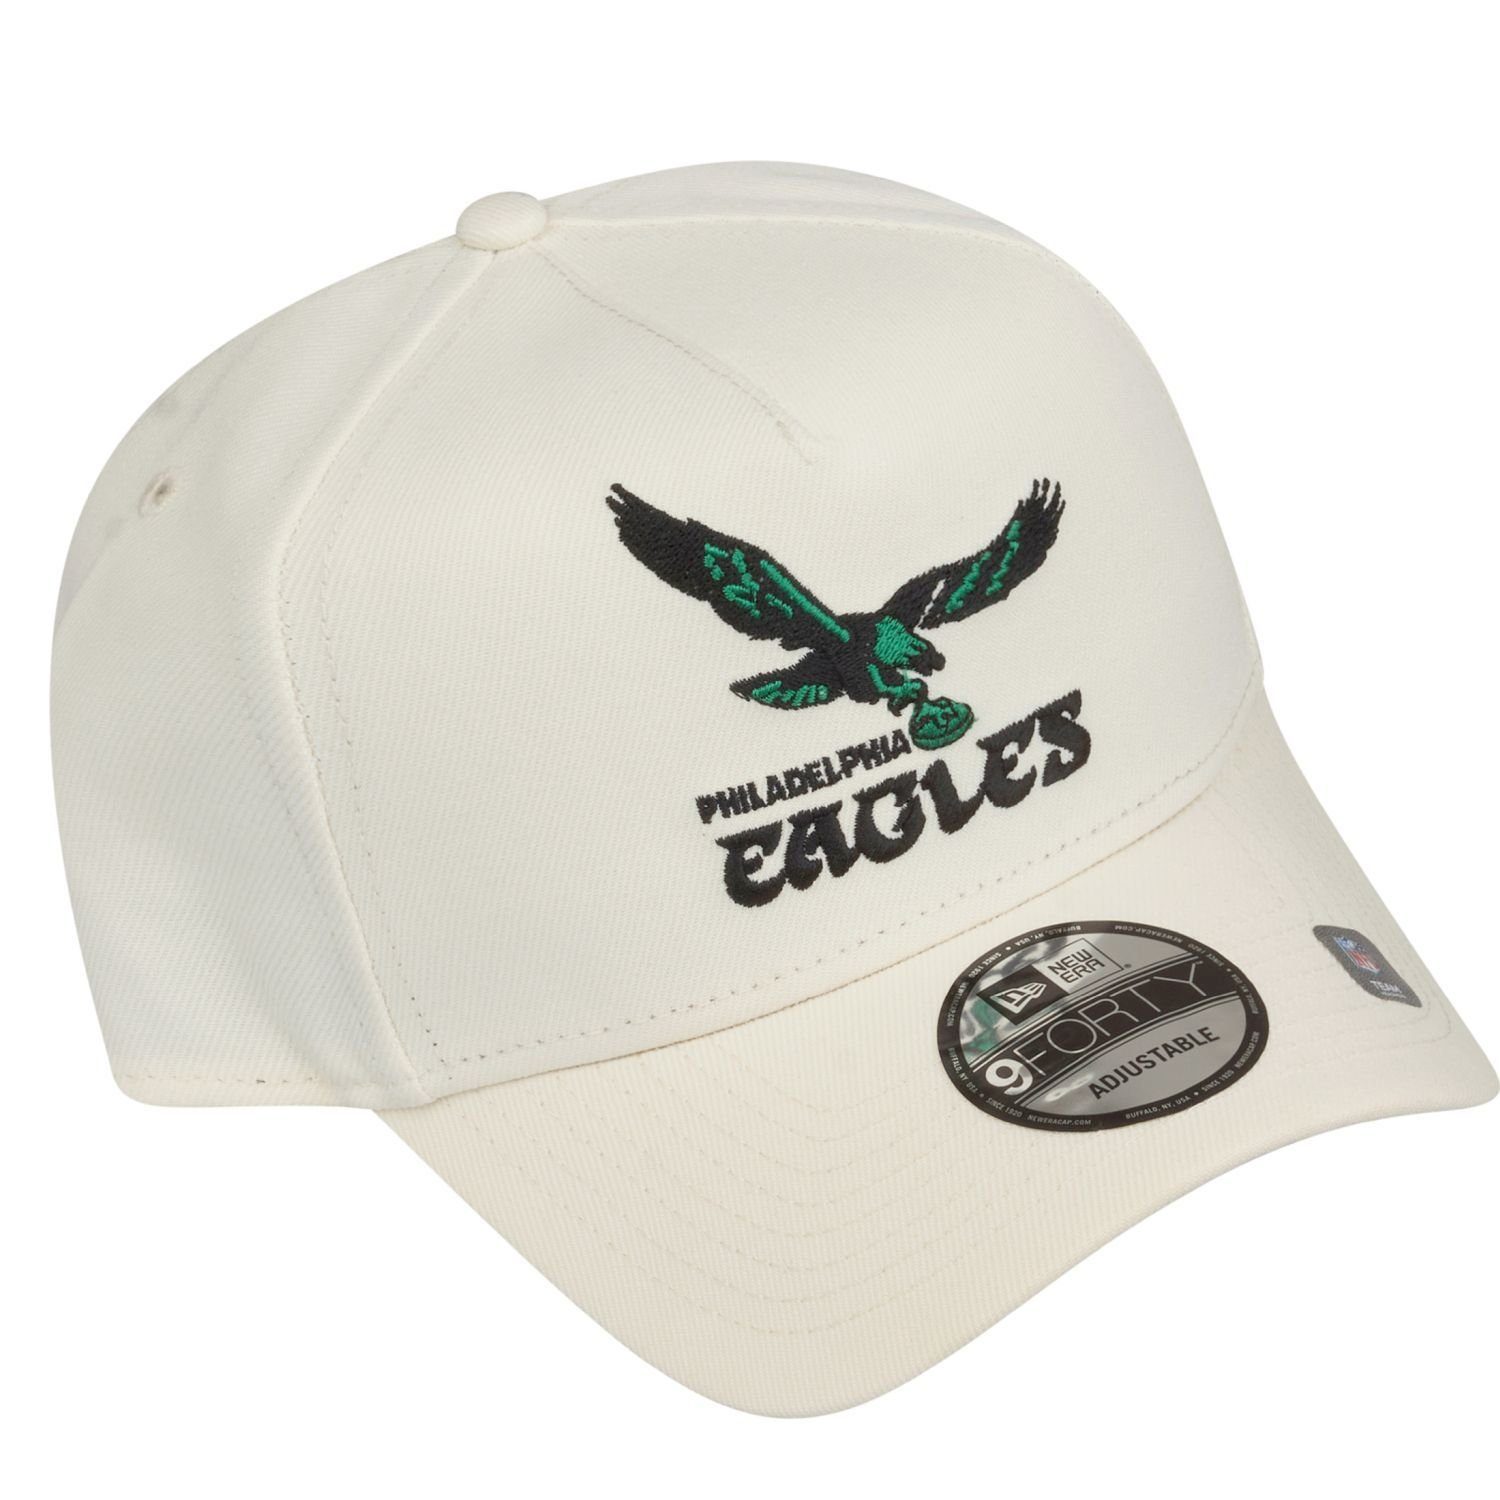 New Era Eagles AFrame Trucker 9Forty white Philadelphia TEAMS Retro chrome Cap NFL Trucker